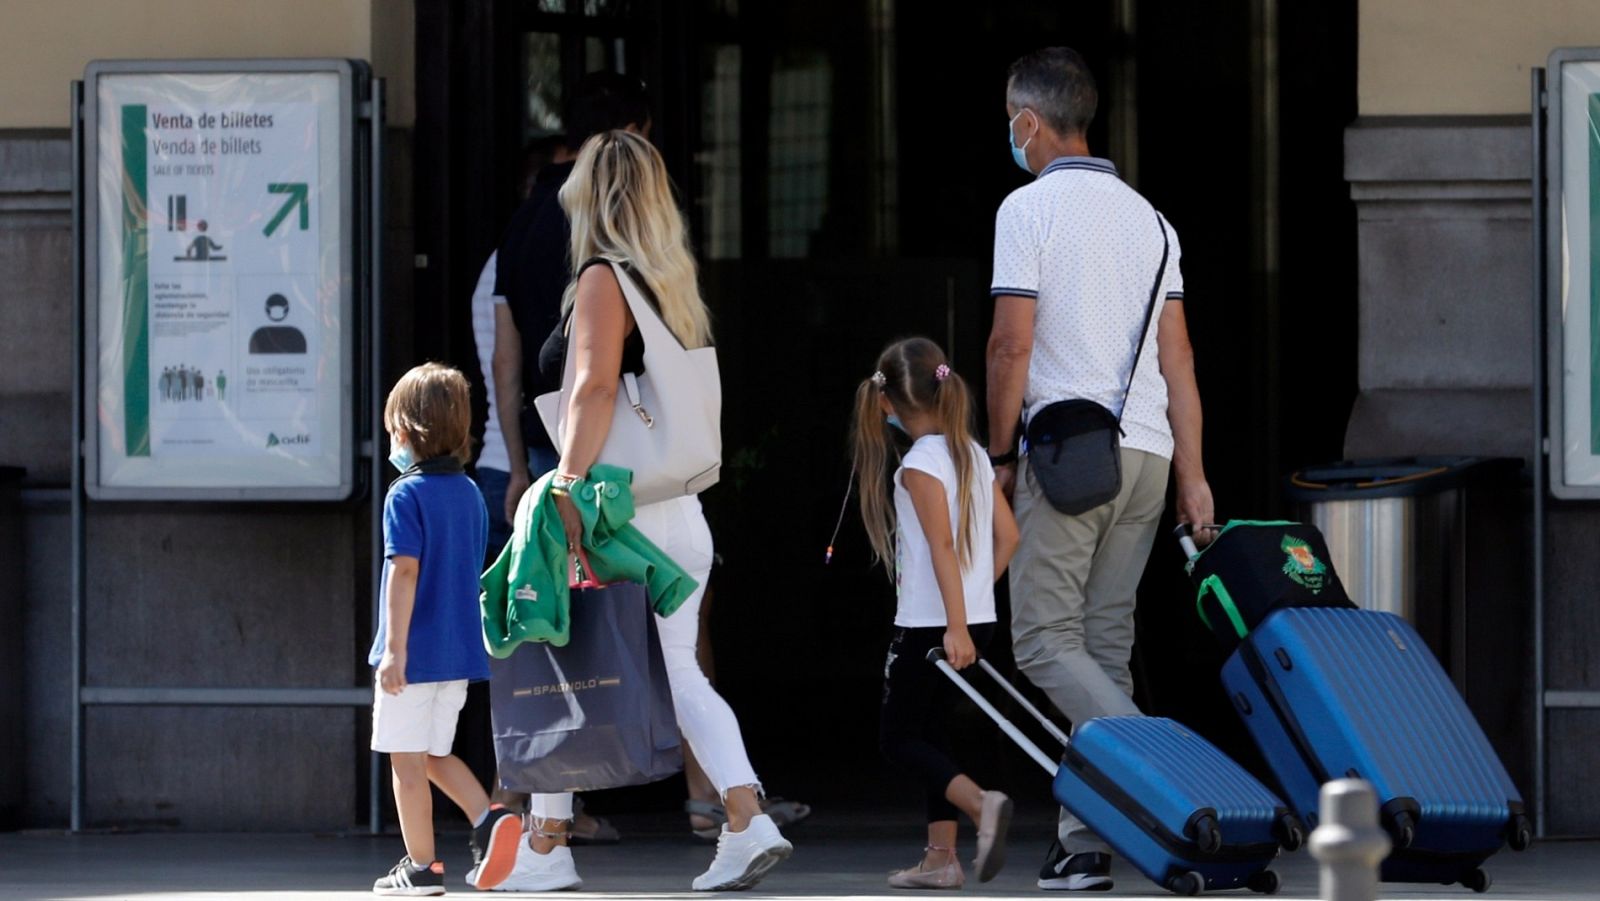 Una familia con sus maletas entra en la estación del Norte de Valencia